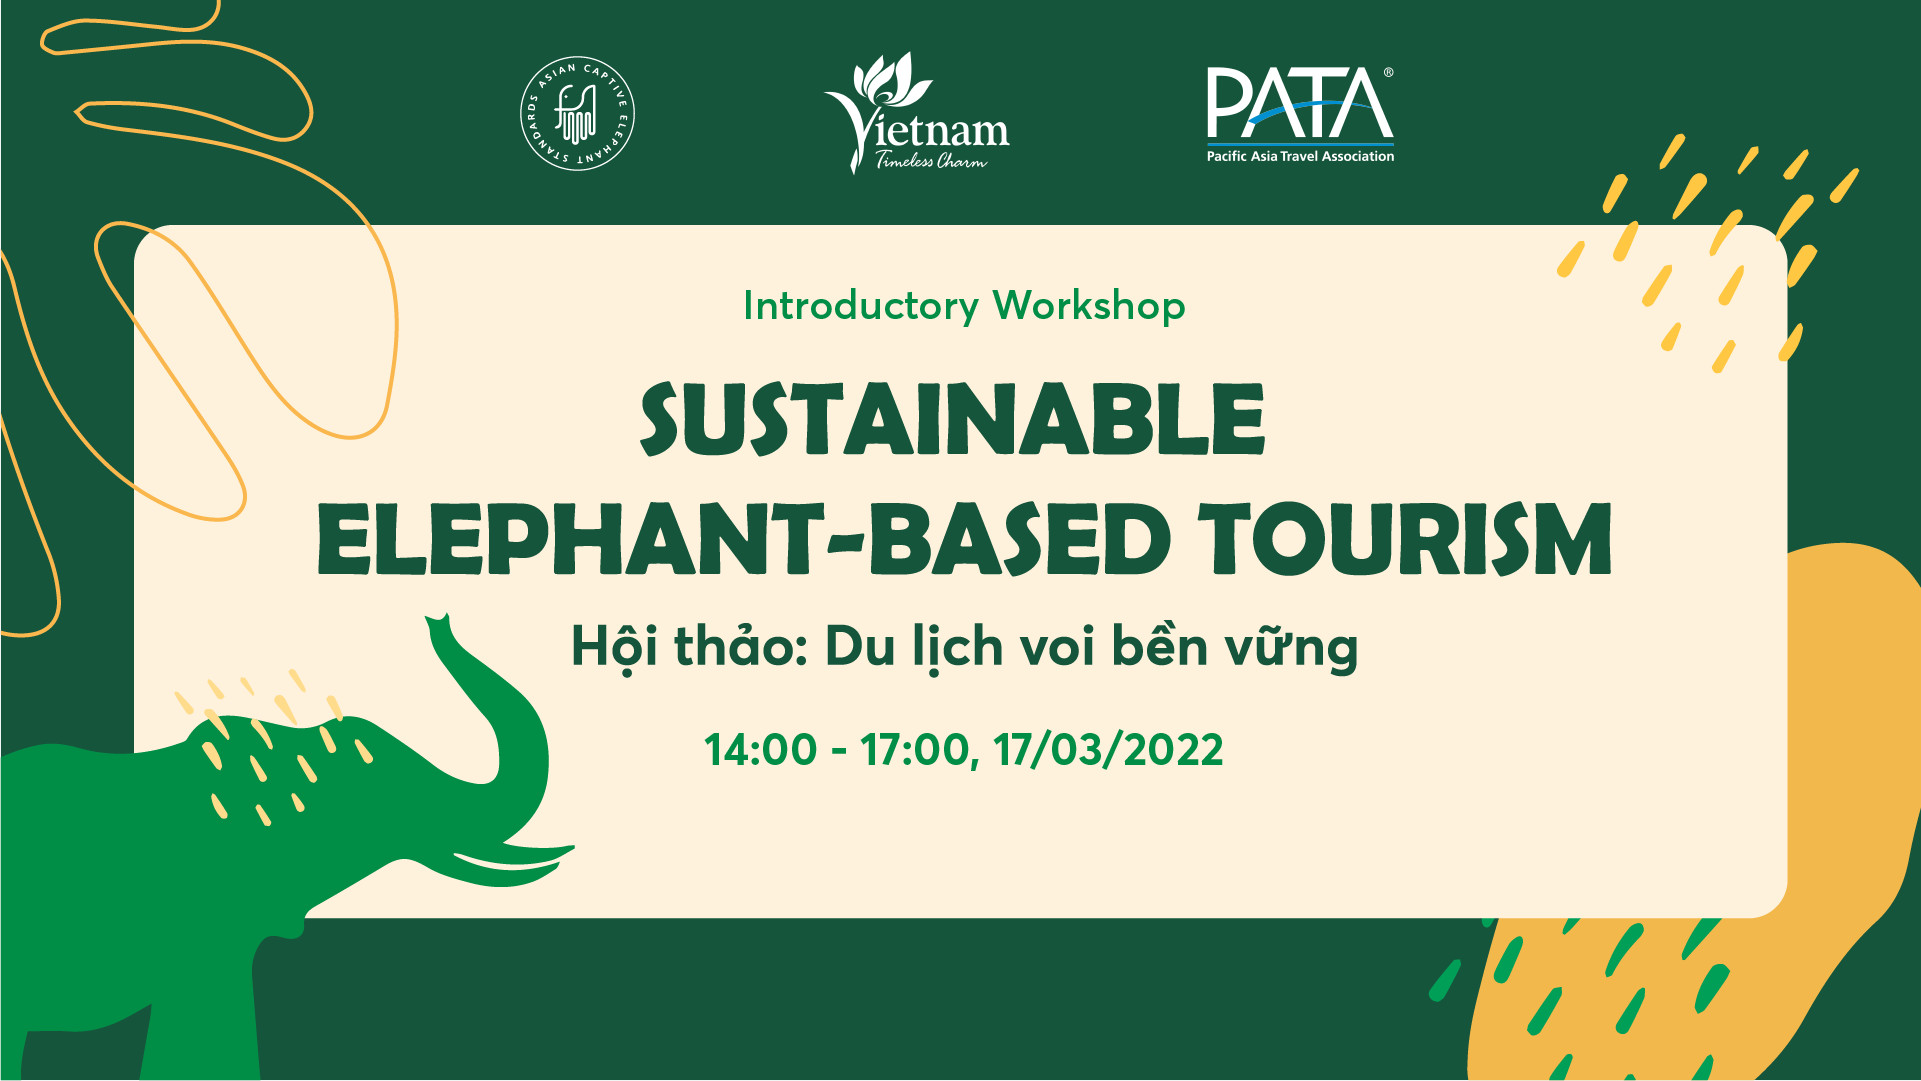 “Du lịch voi bền vững” - Khởi đầu mới cho du lịch voi Việt Nam